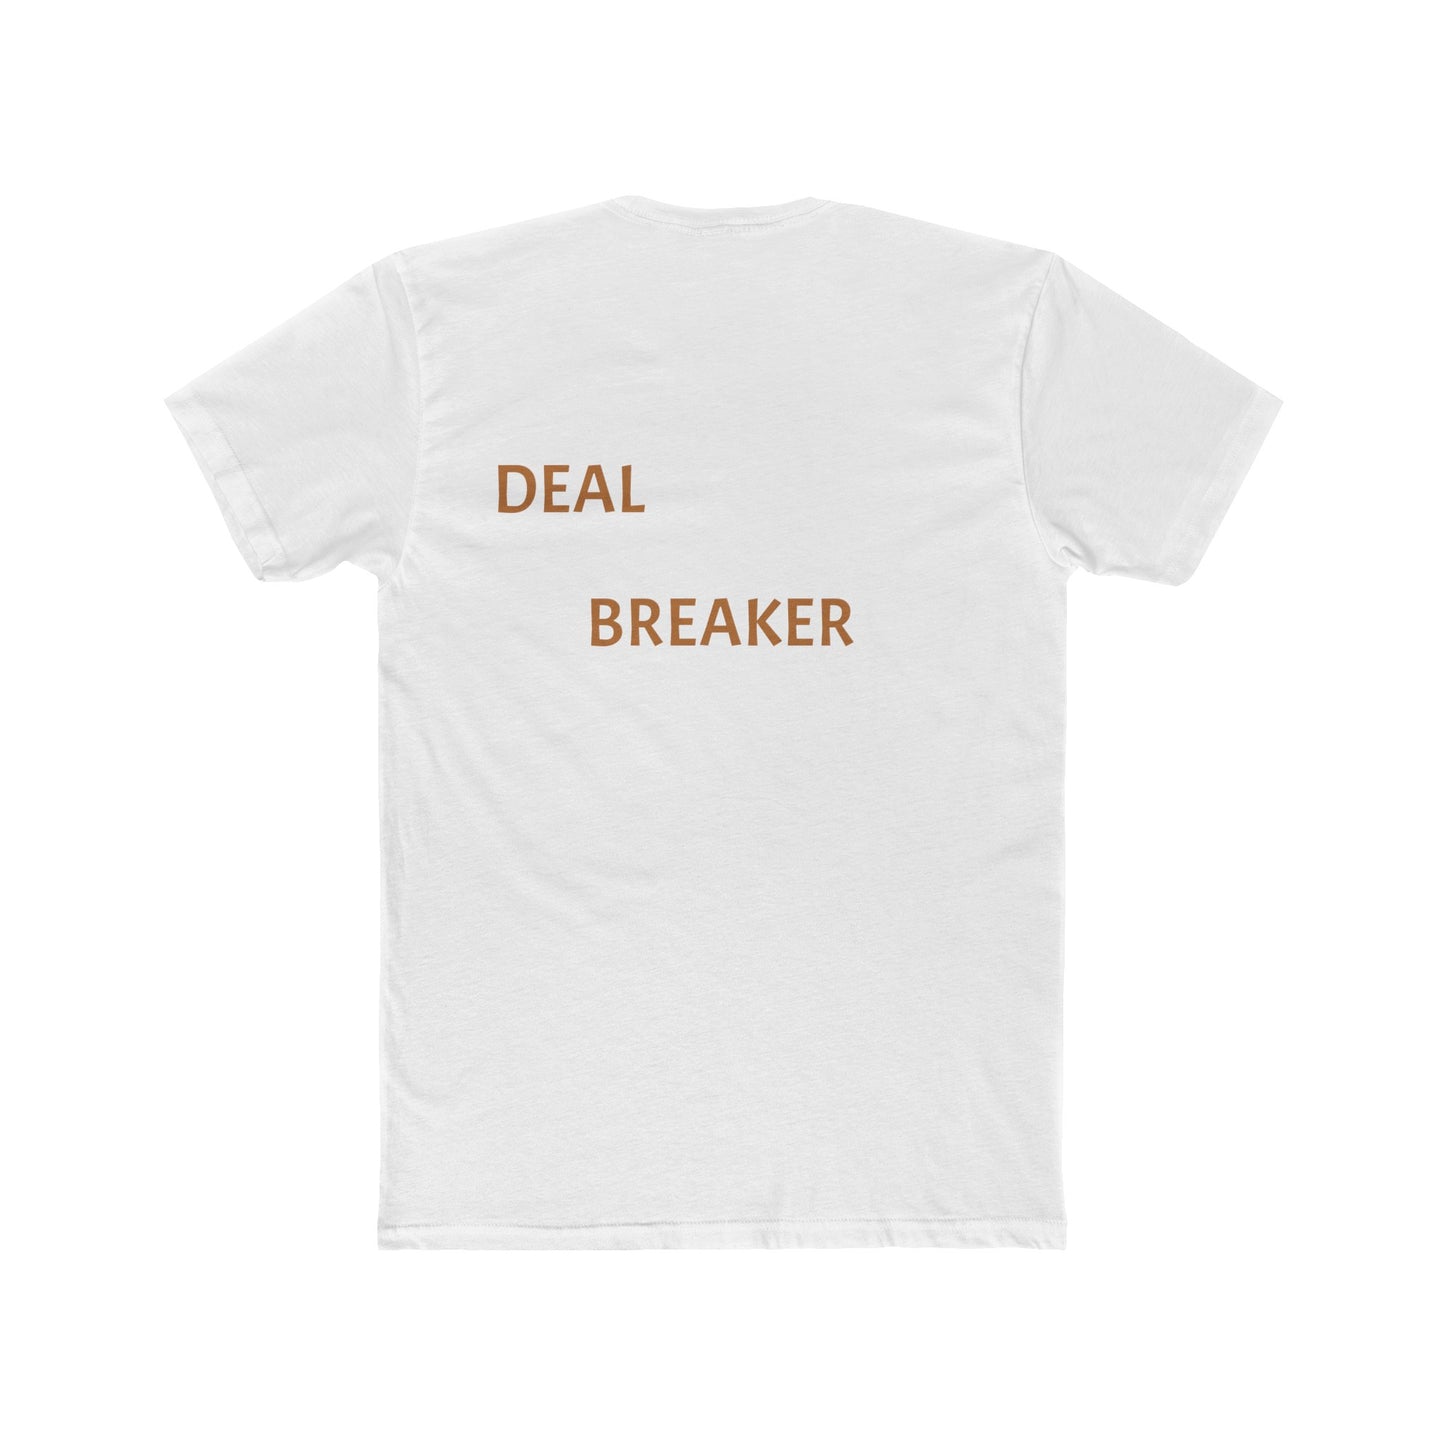 Deal Breaker: Men's Cotton Crew Tee